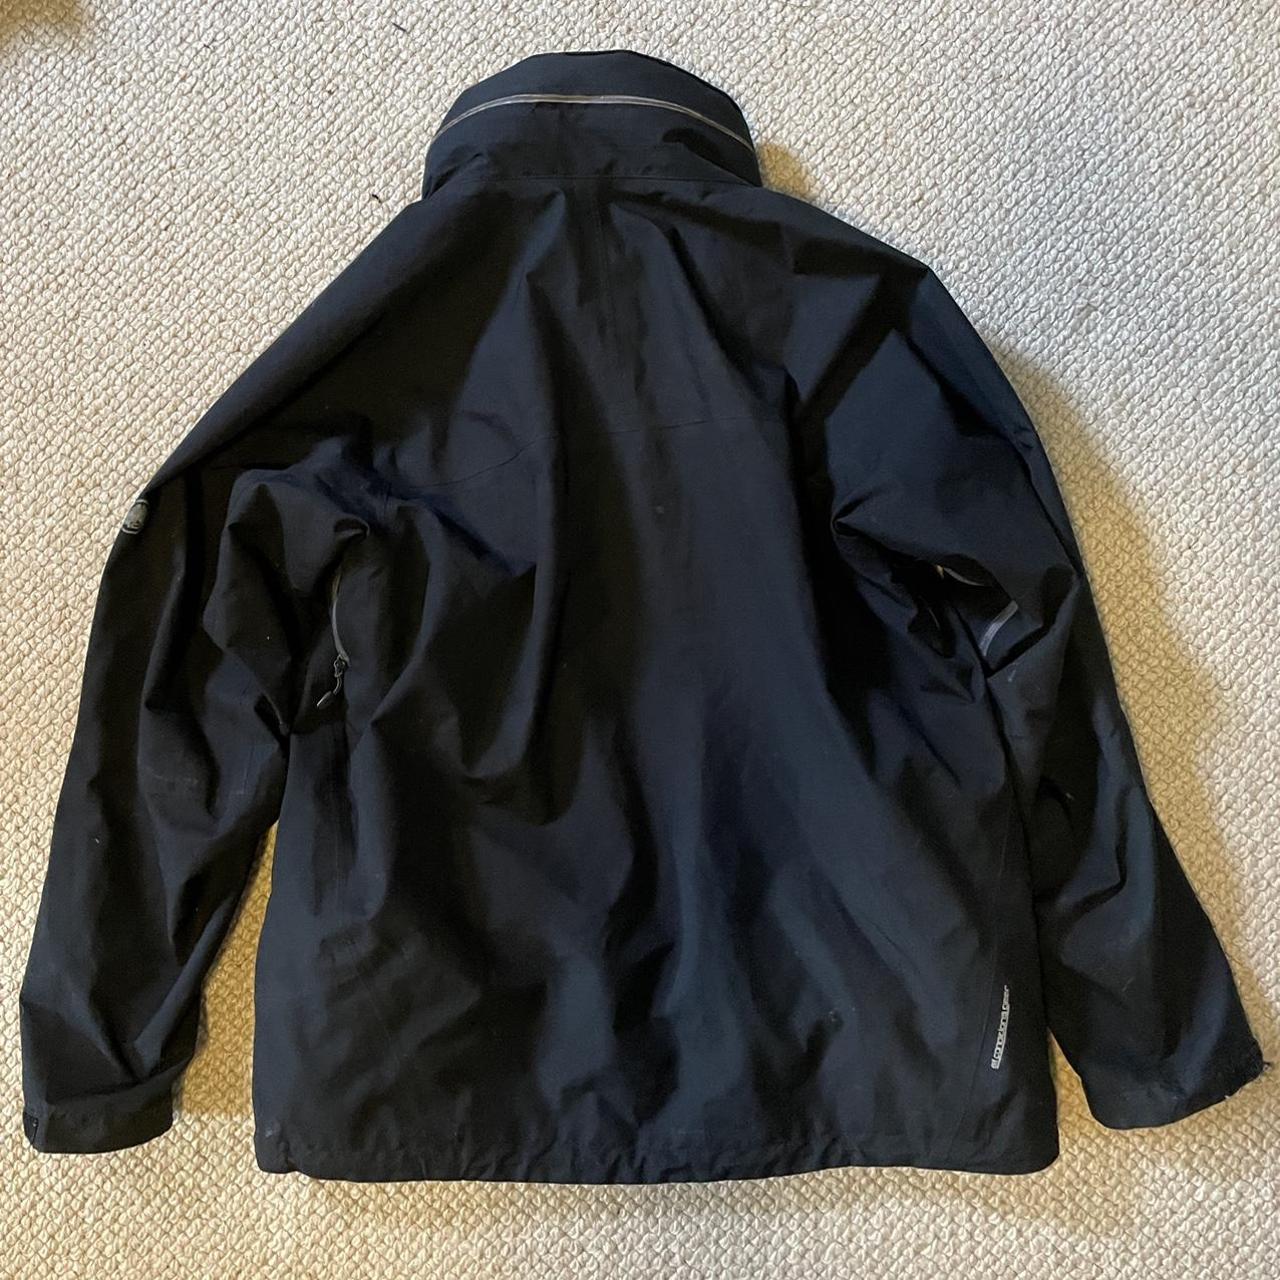 Vintage black Nike acg jacket Upper pocket lining... - Depop